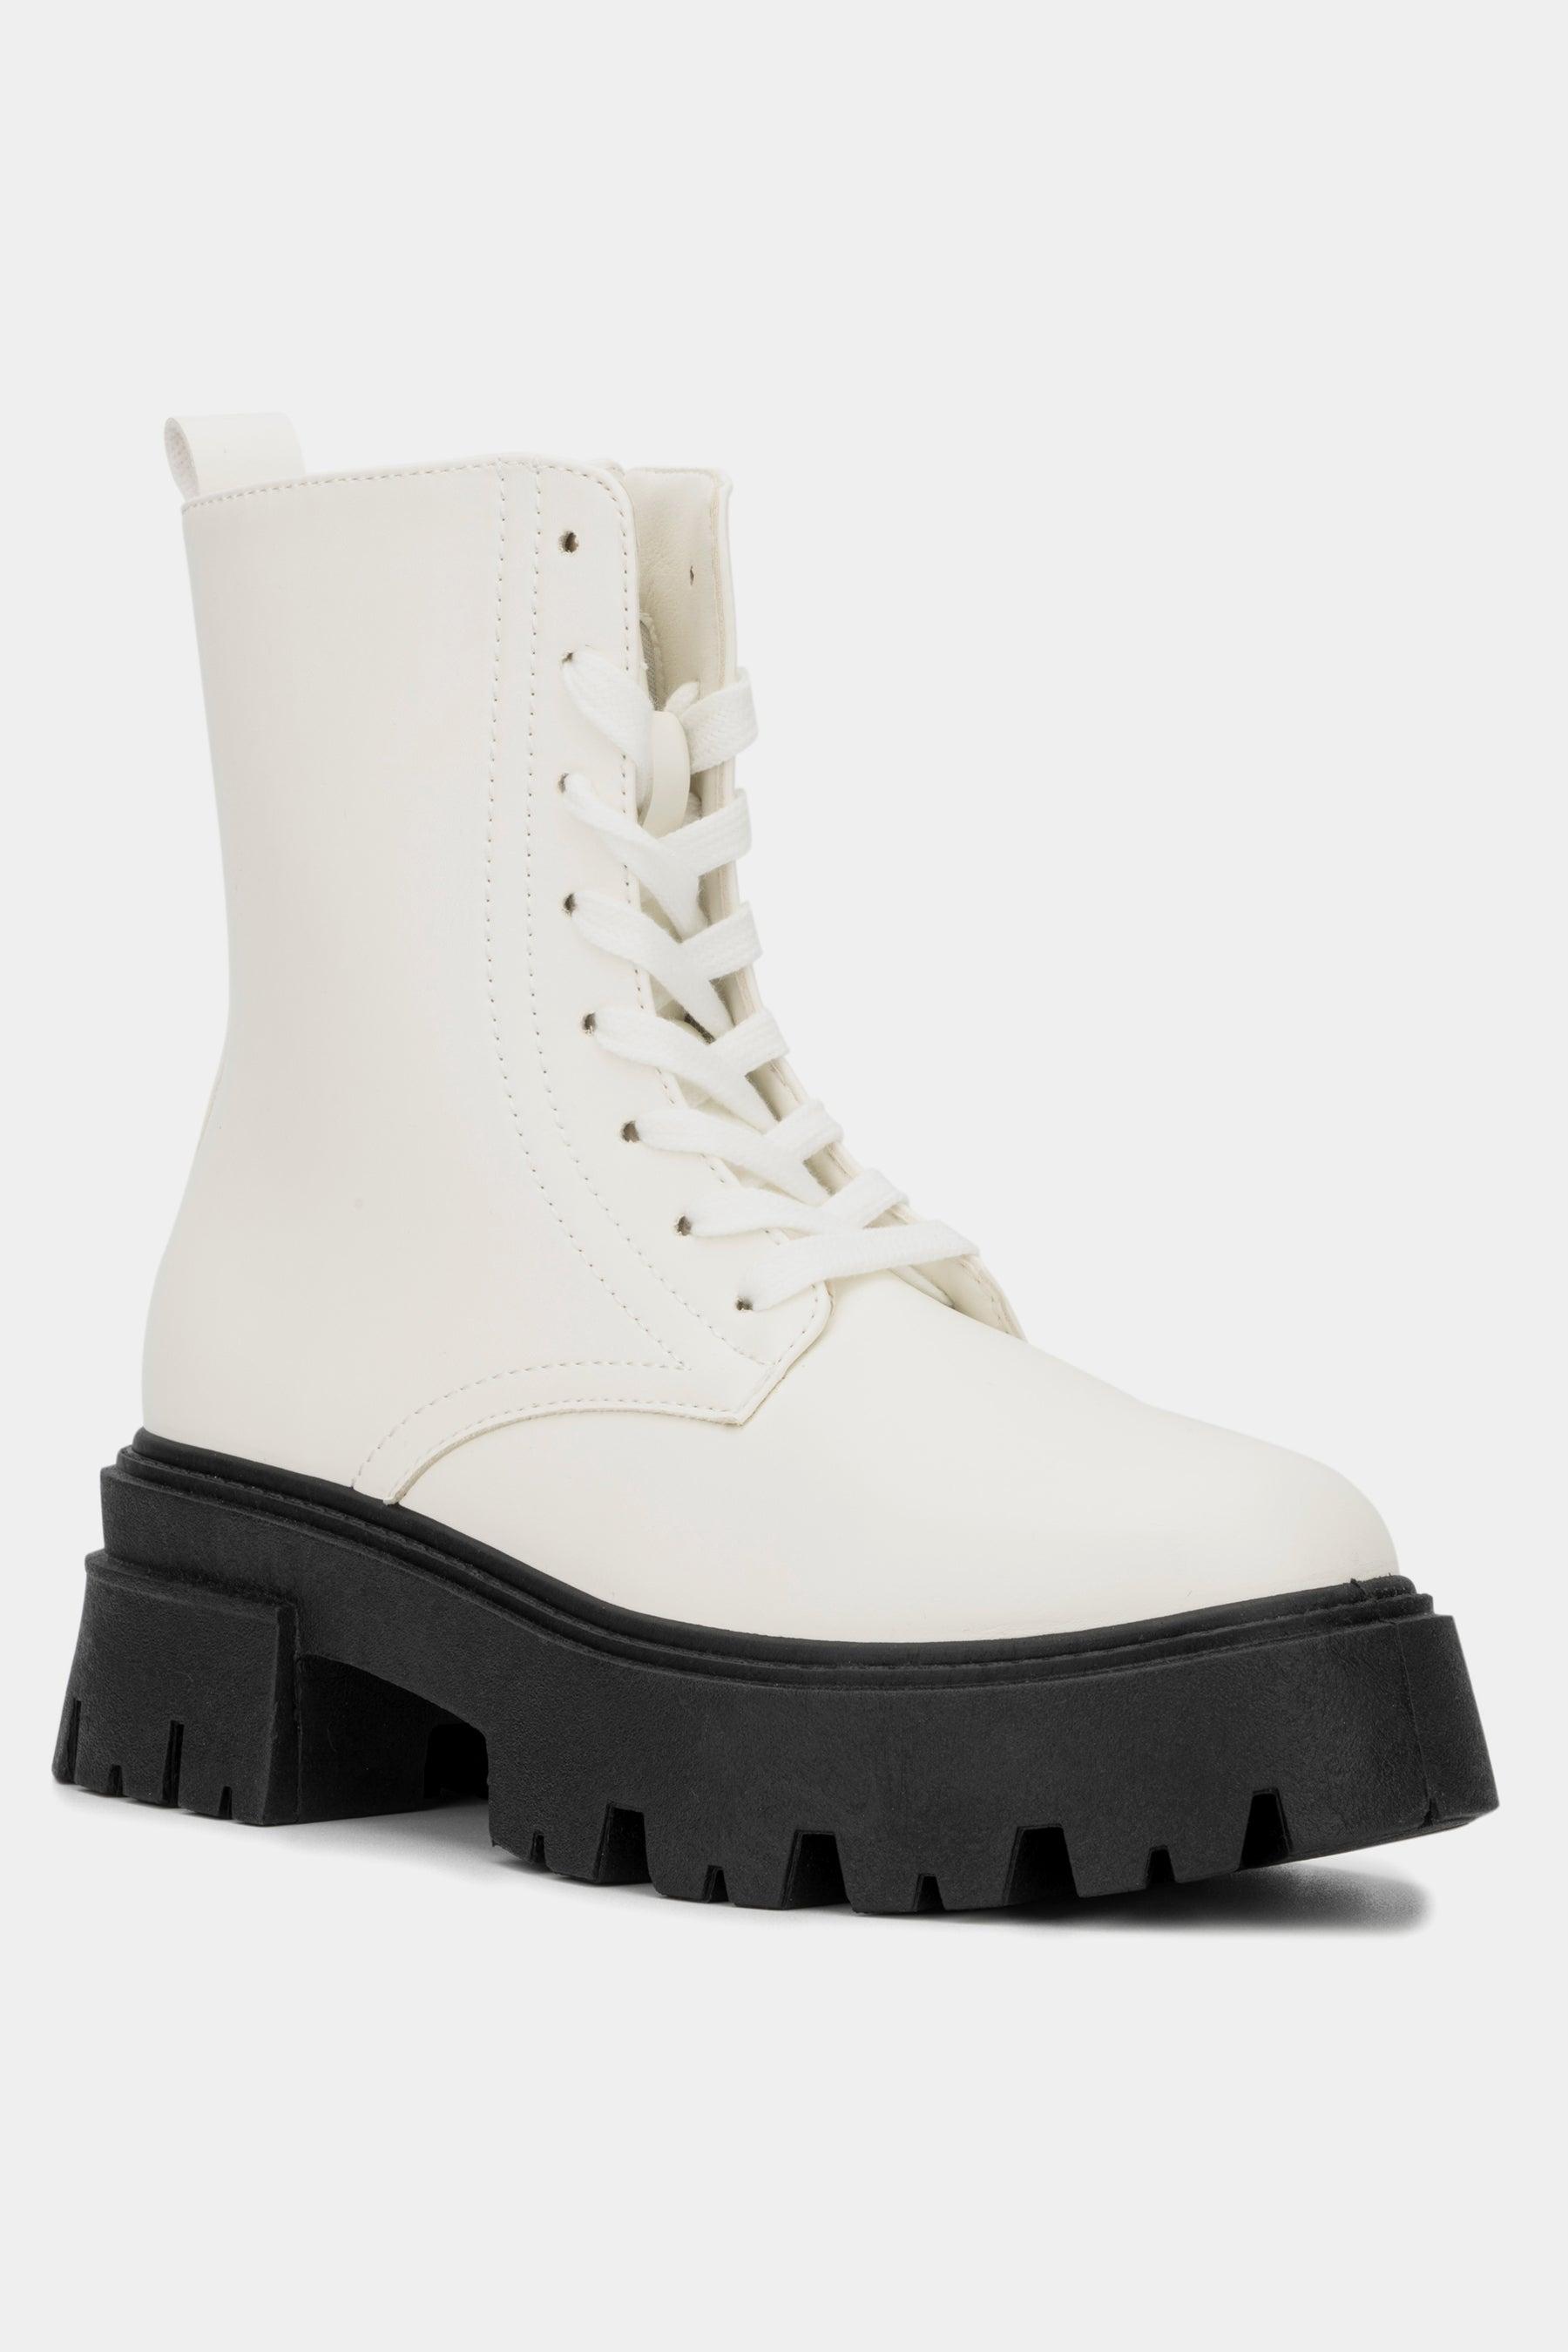 Olivia Miller Yaretzi Boot in White | Lyst